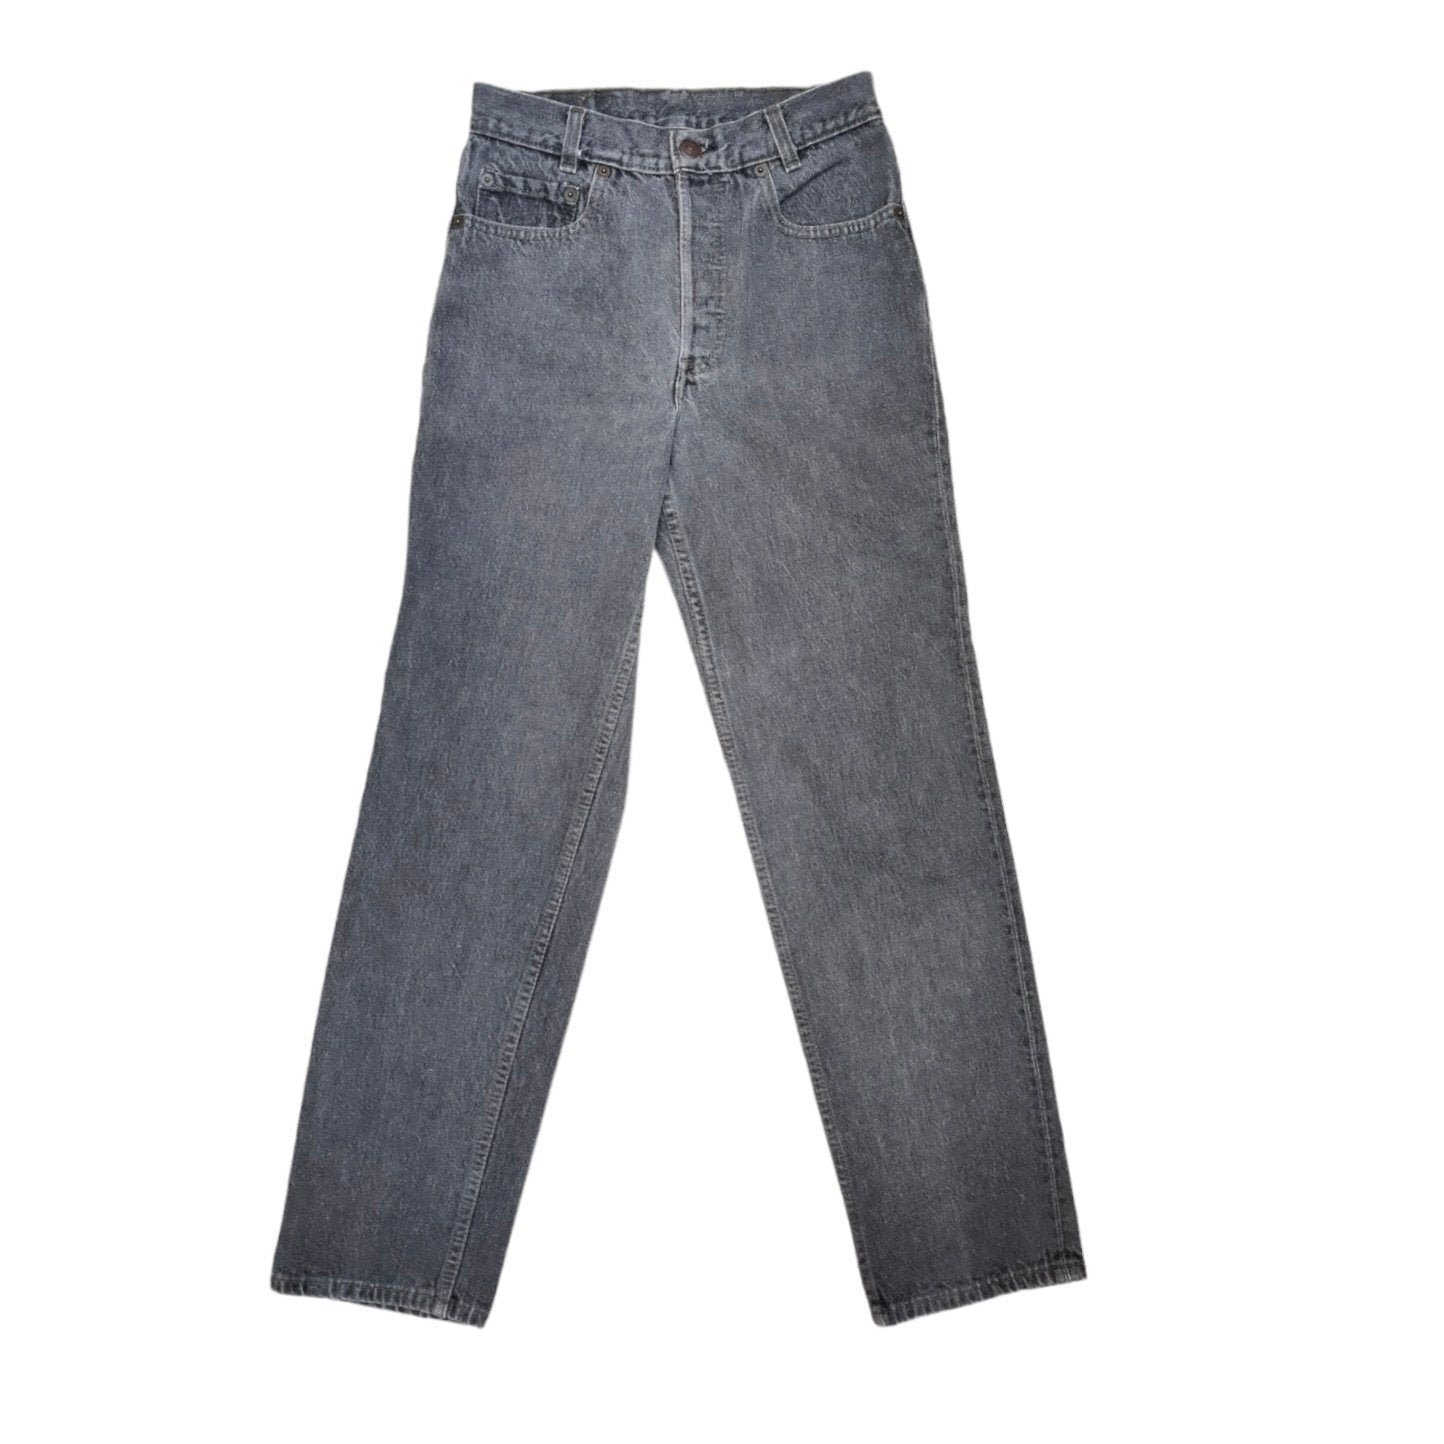 Vintage Levis 701 Student Grey Jeans (W27/L30)